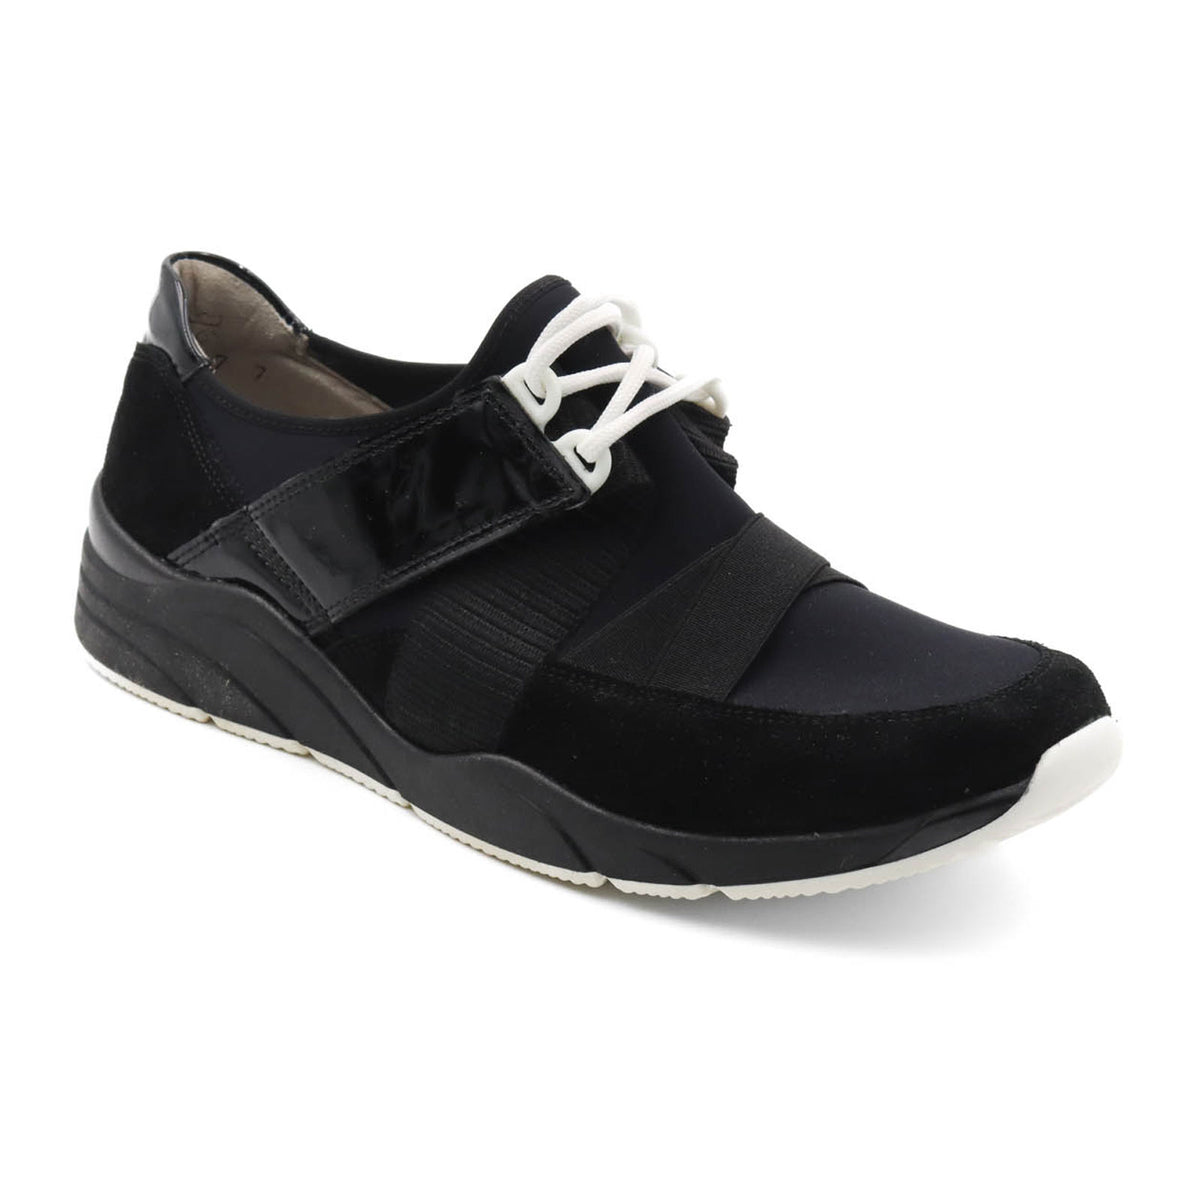 Waldlaufer Maggie 357004 Sneaker (Women) - Black – The Heel Shoe Fitters